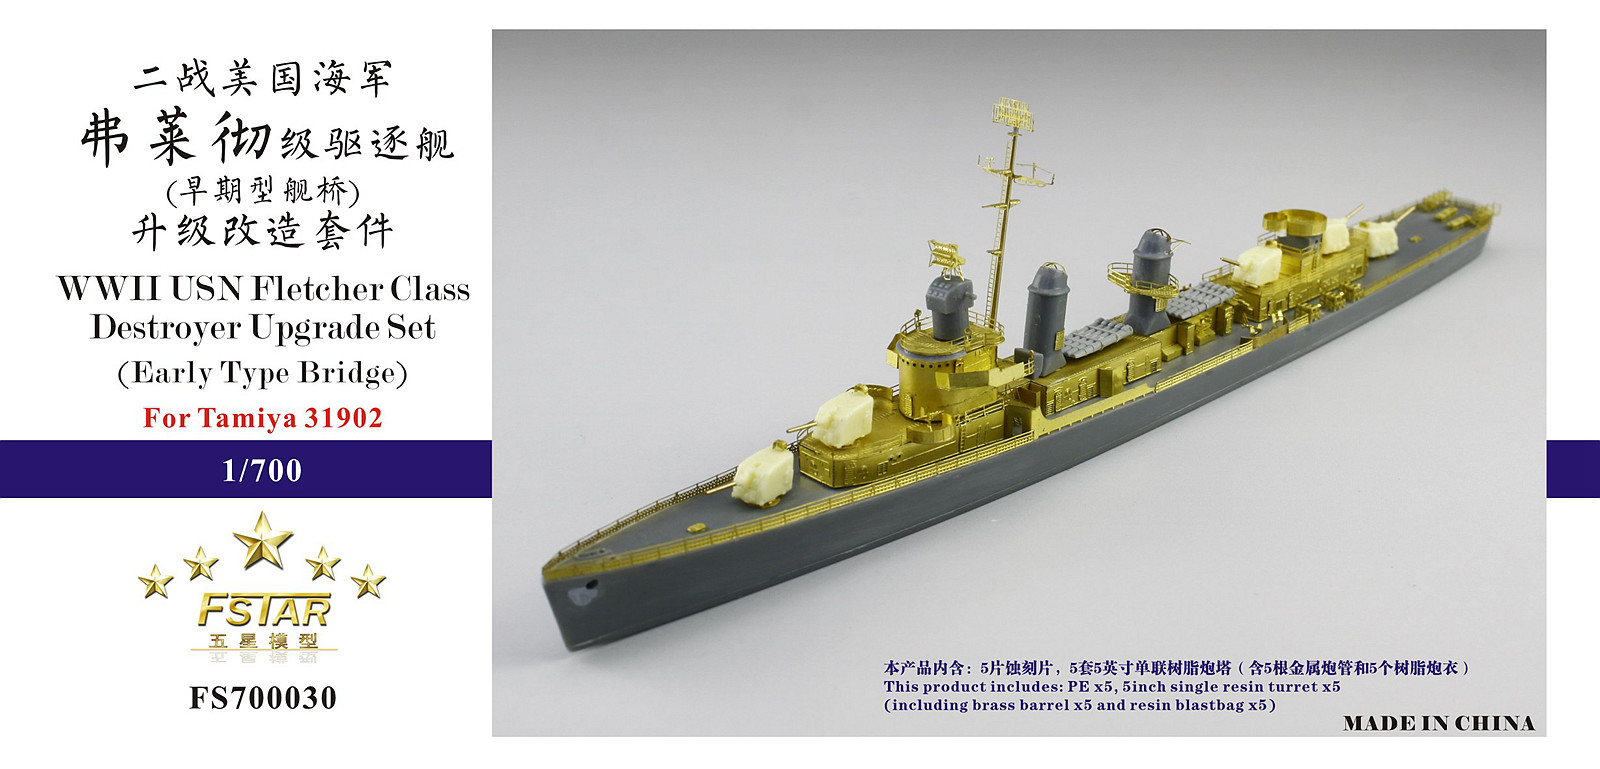 1/700 二战美国海军弗莱彻级驱逐舰(早期型舰桥)升级改造套件(配田宫31902) - 点击图像关闭